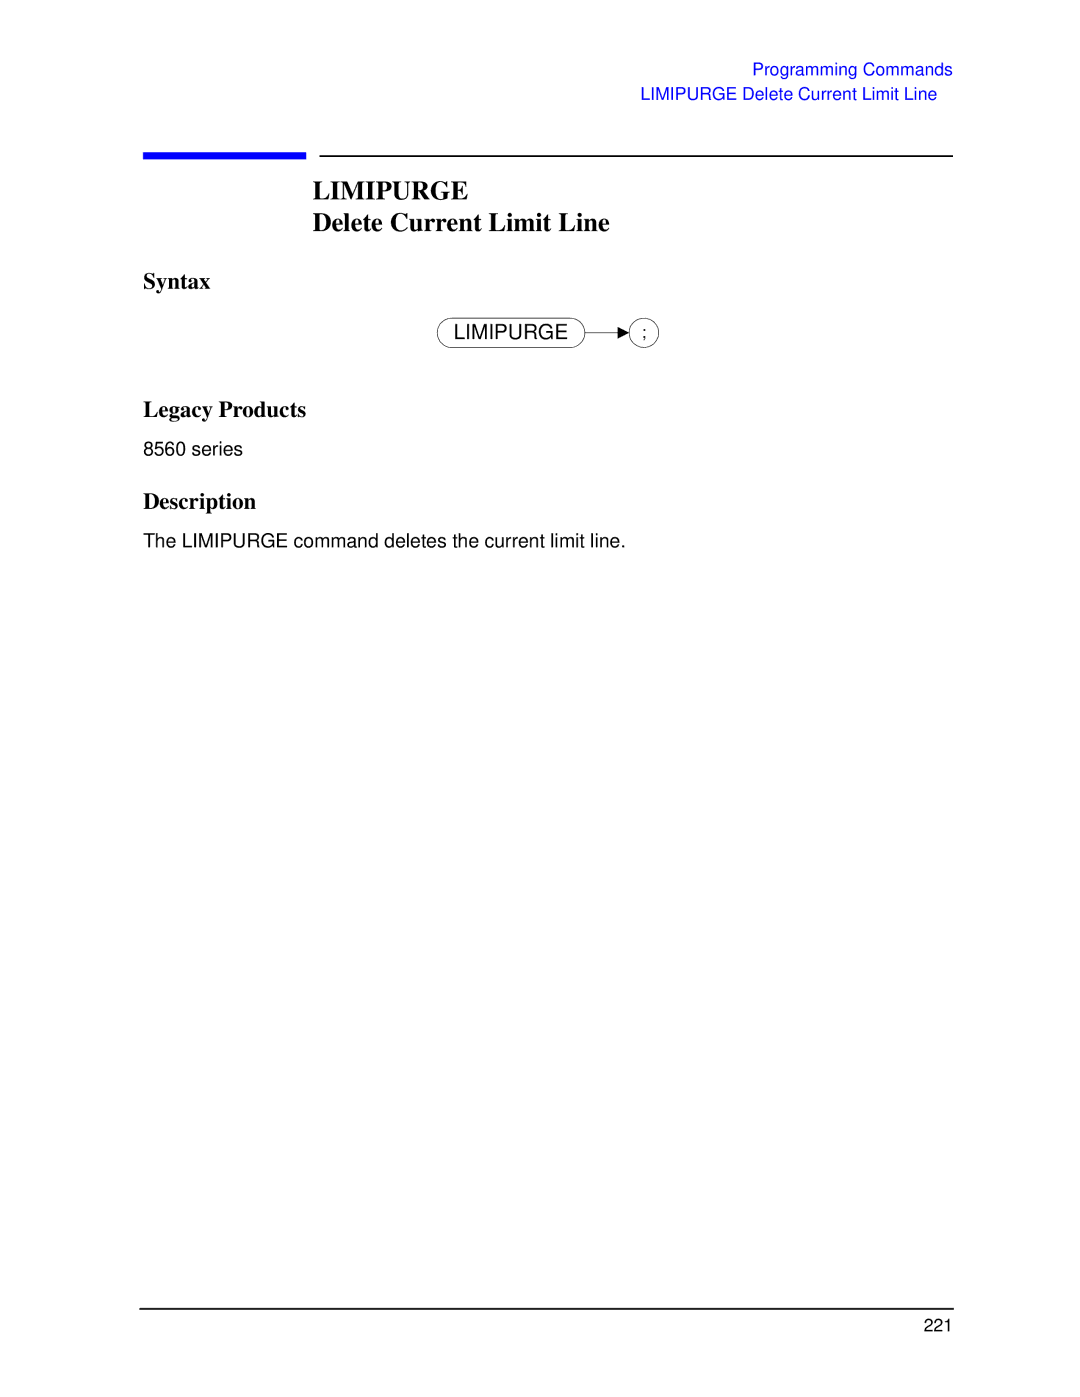 Agilent Technologies N9030a manual Limipurge, Delete Current Limit Line 